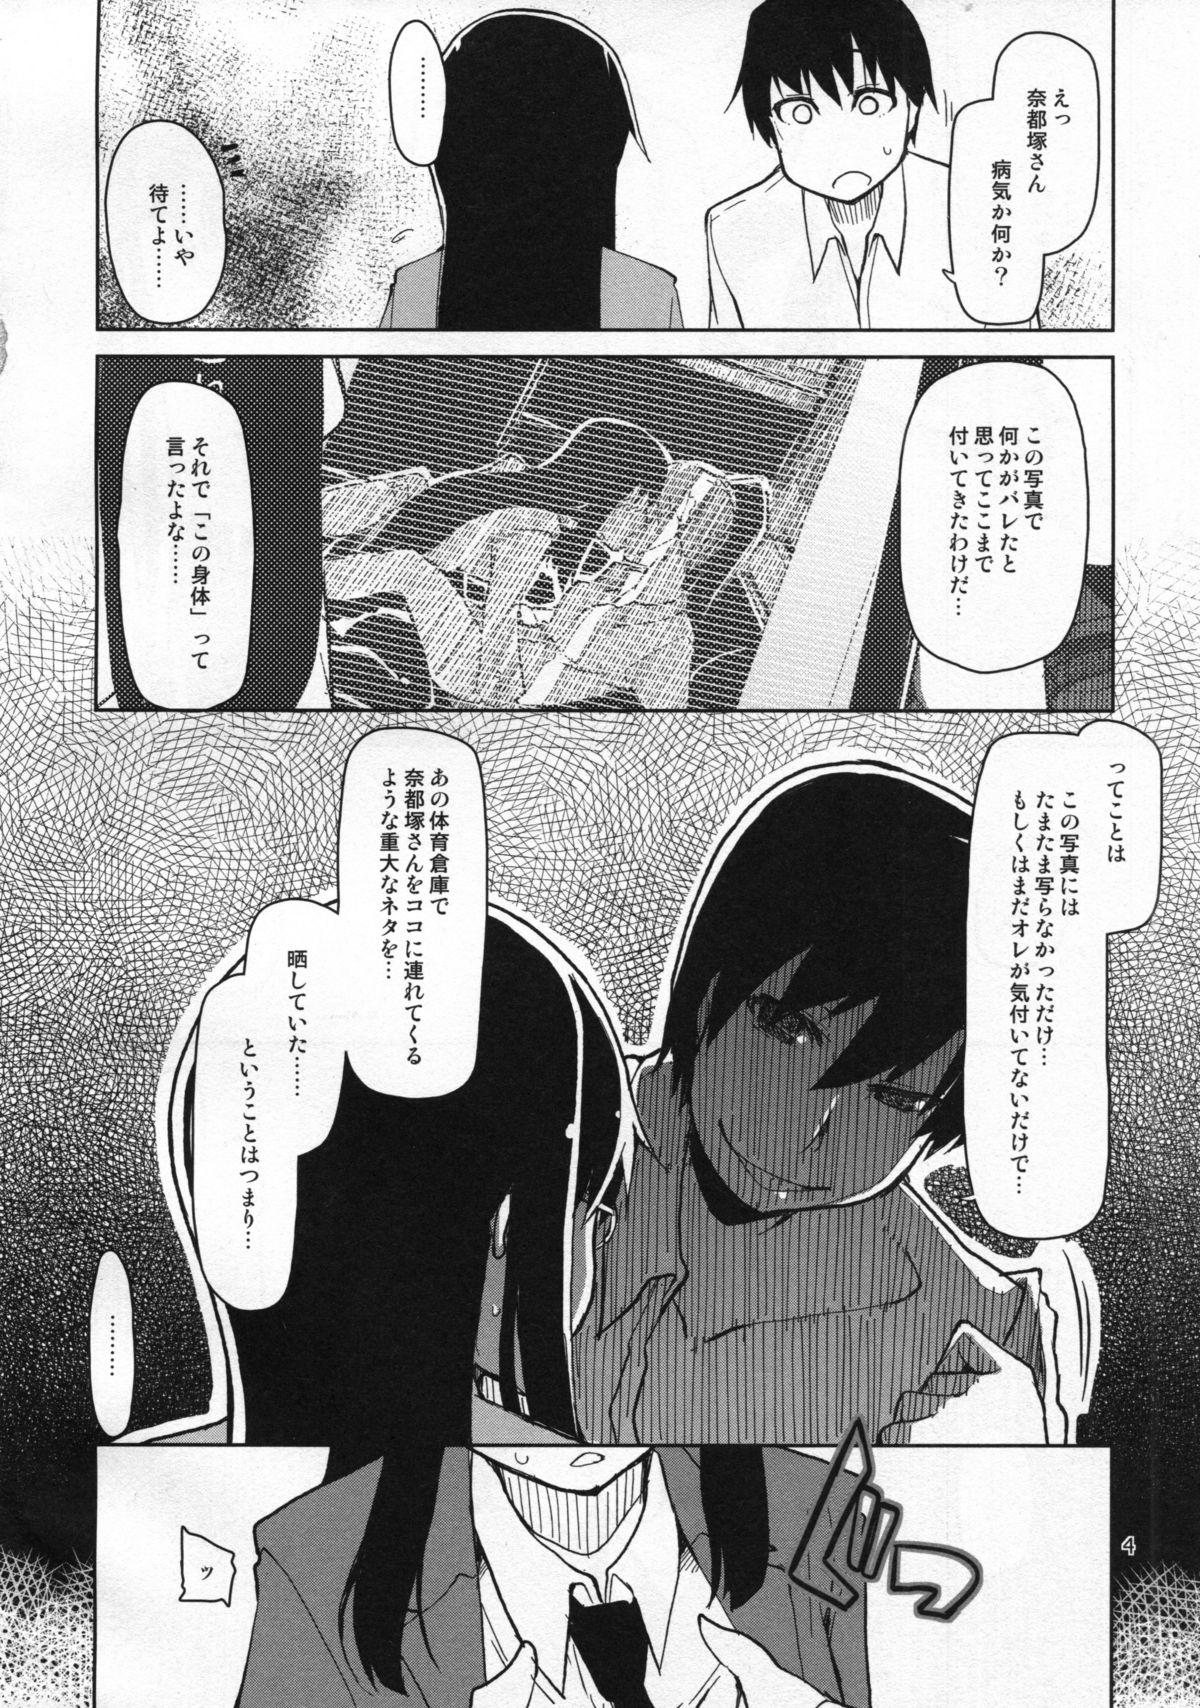 Baile Natsuzuka-san no Himitsu. Vol. 5 Doukoku Hen Girlfriend - Page 5